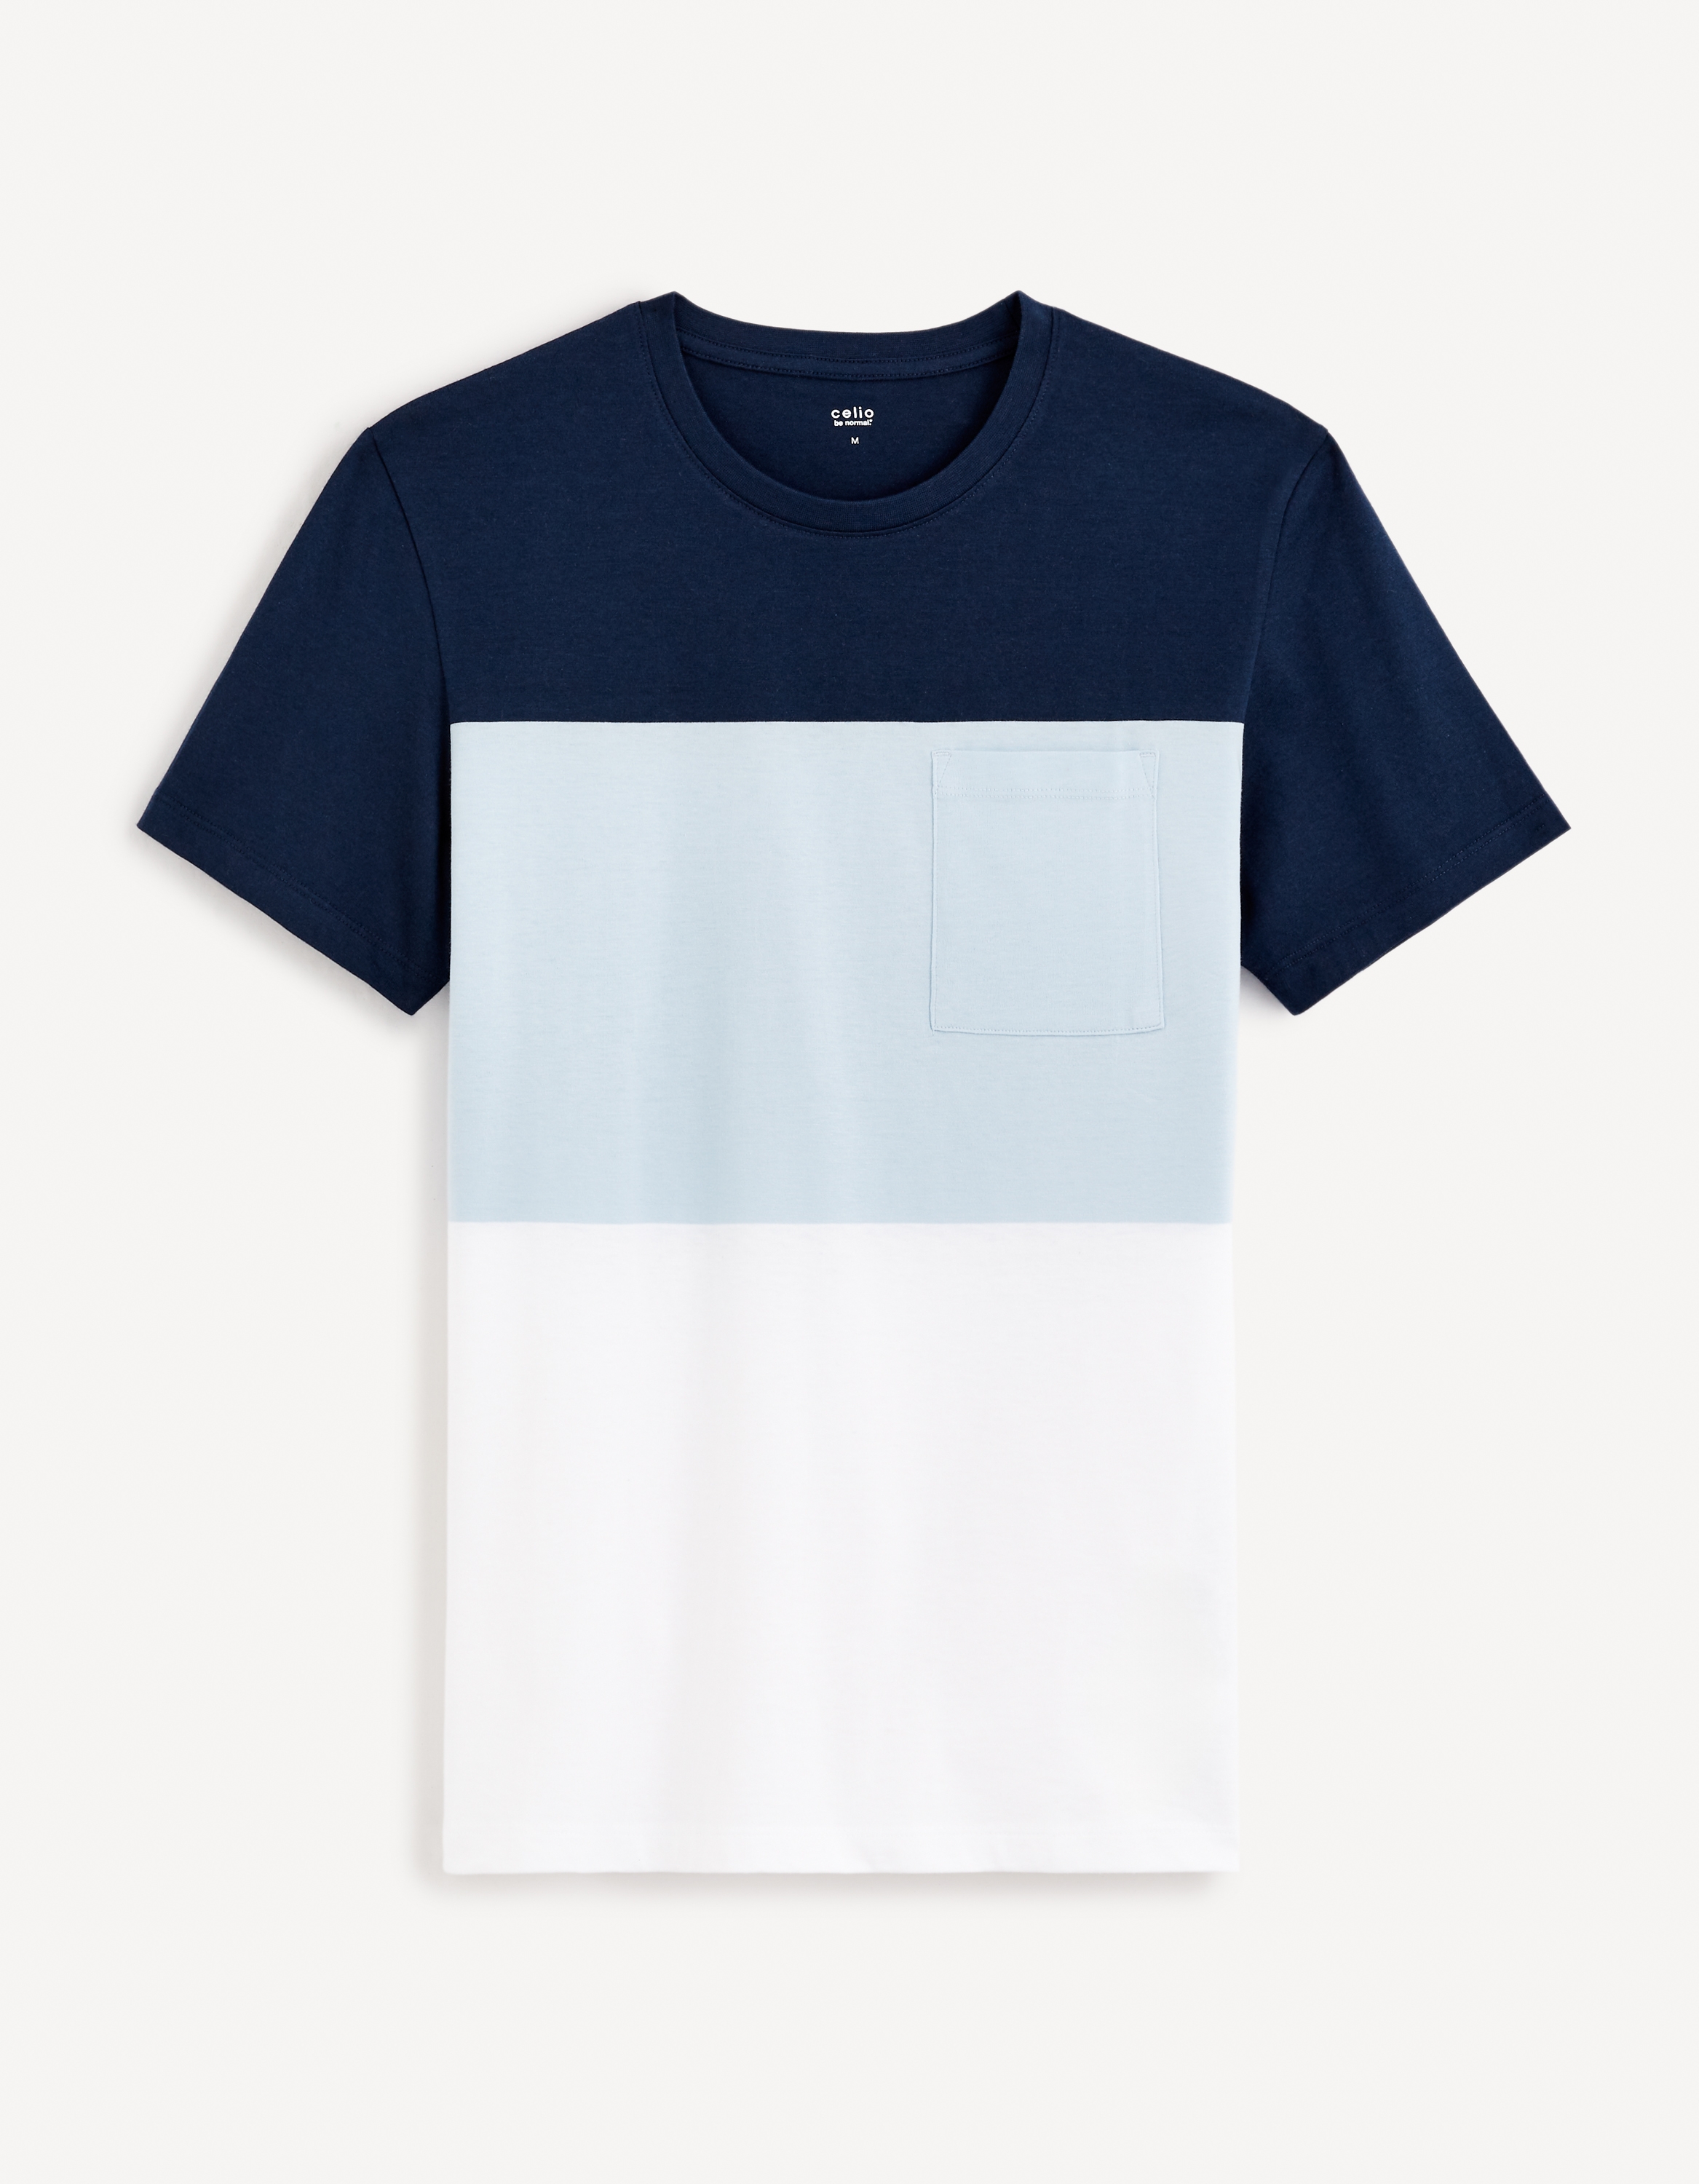 Celio Men Navy Blue Colourblocked Regular Fit Cotton Short Sleeves Tshirt